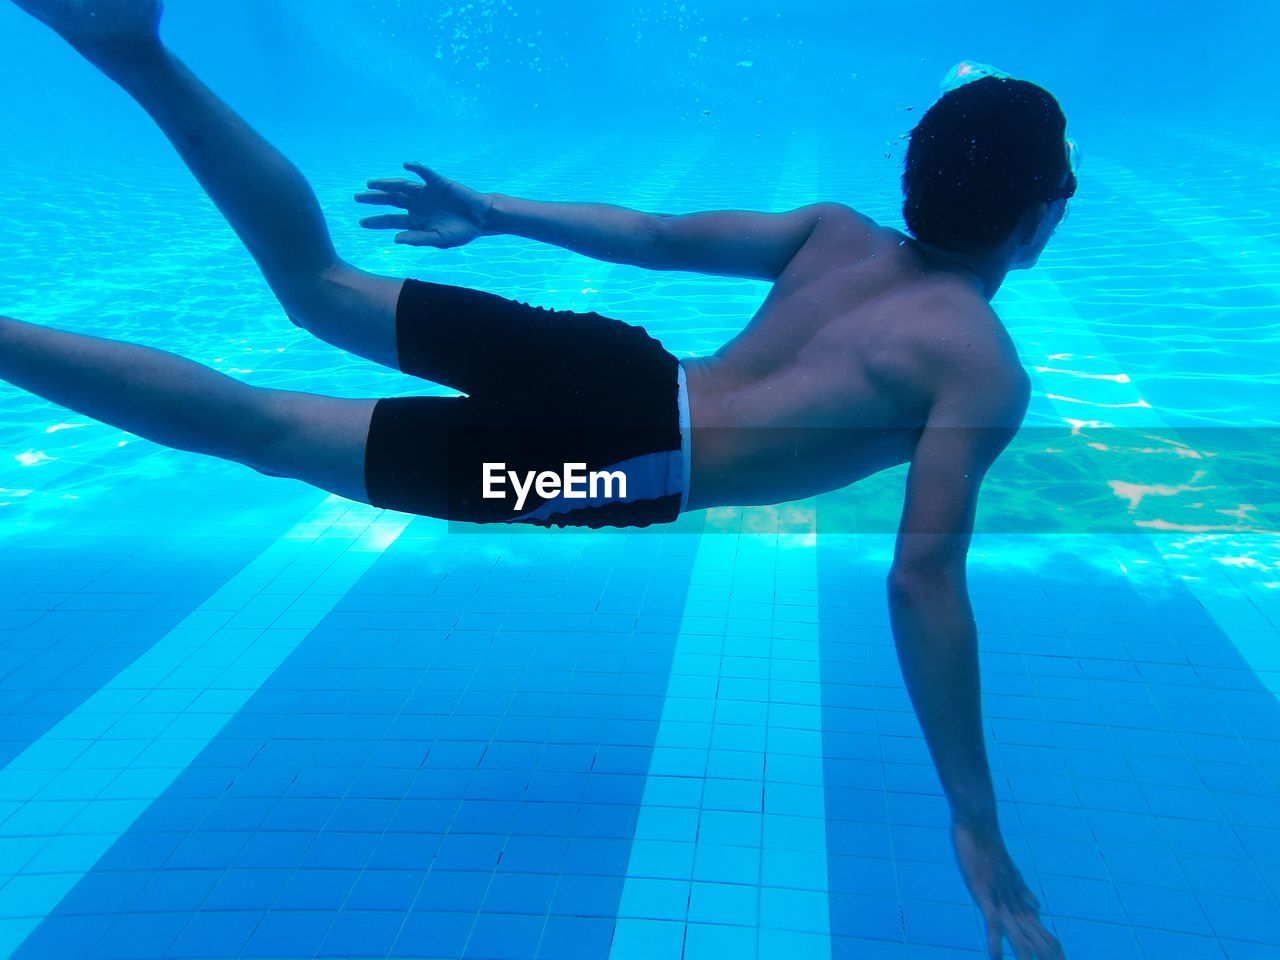 Shirtless teenage boy swimming in pool